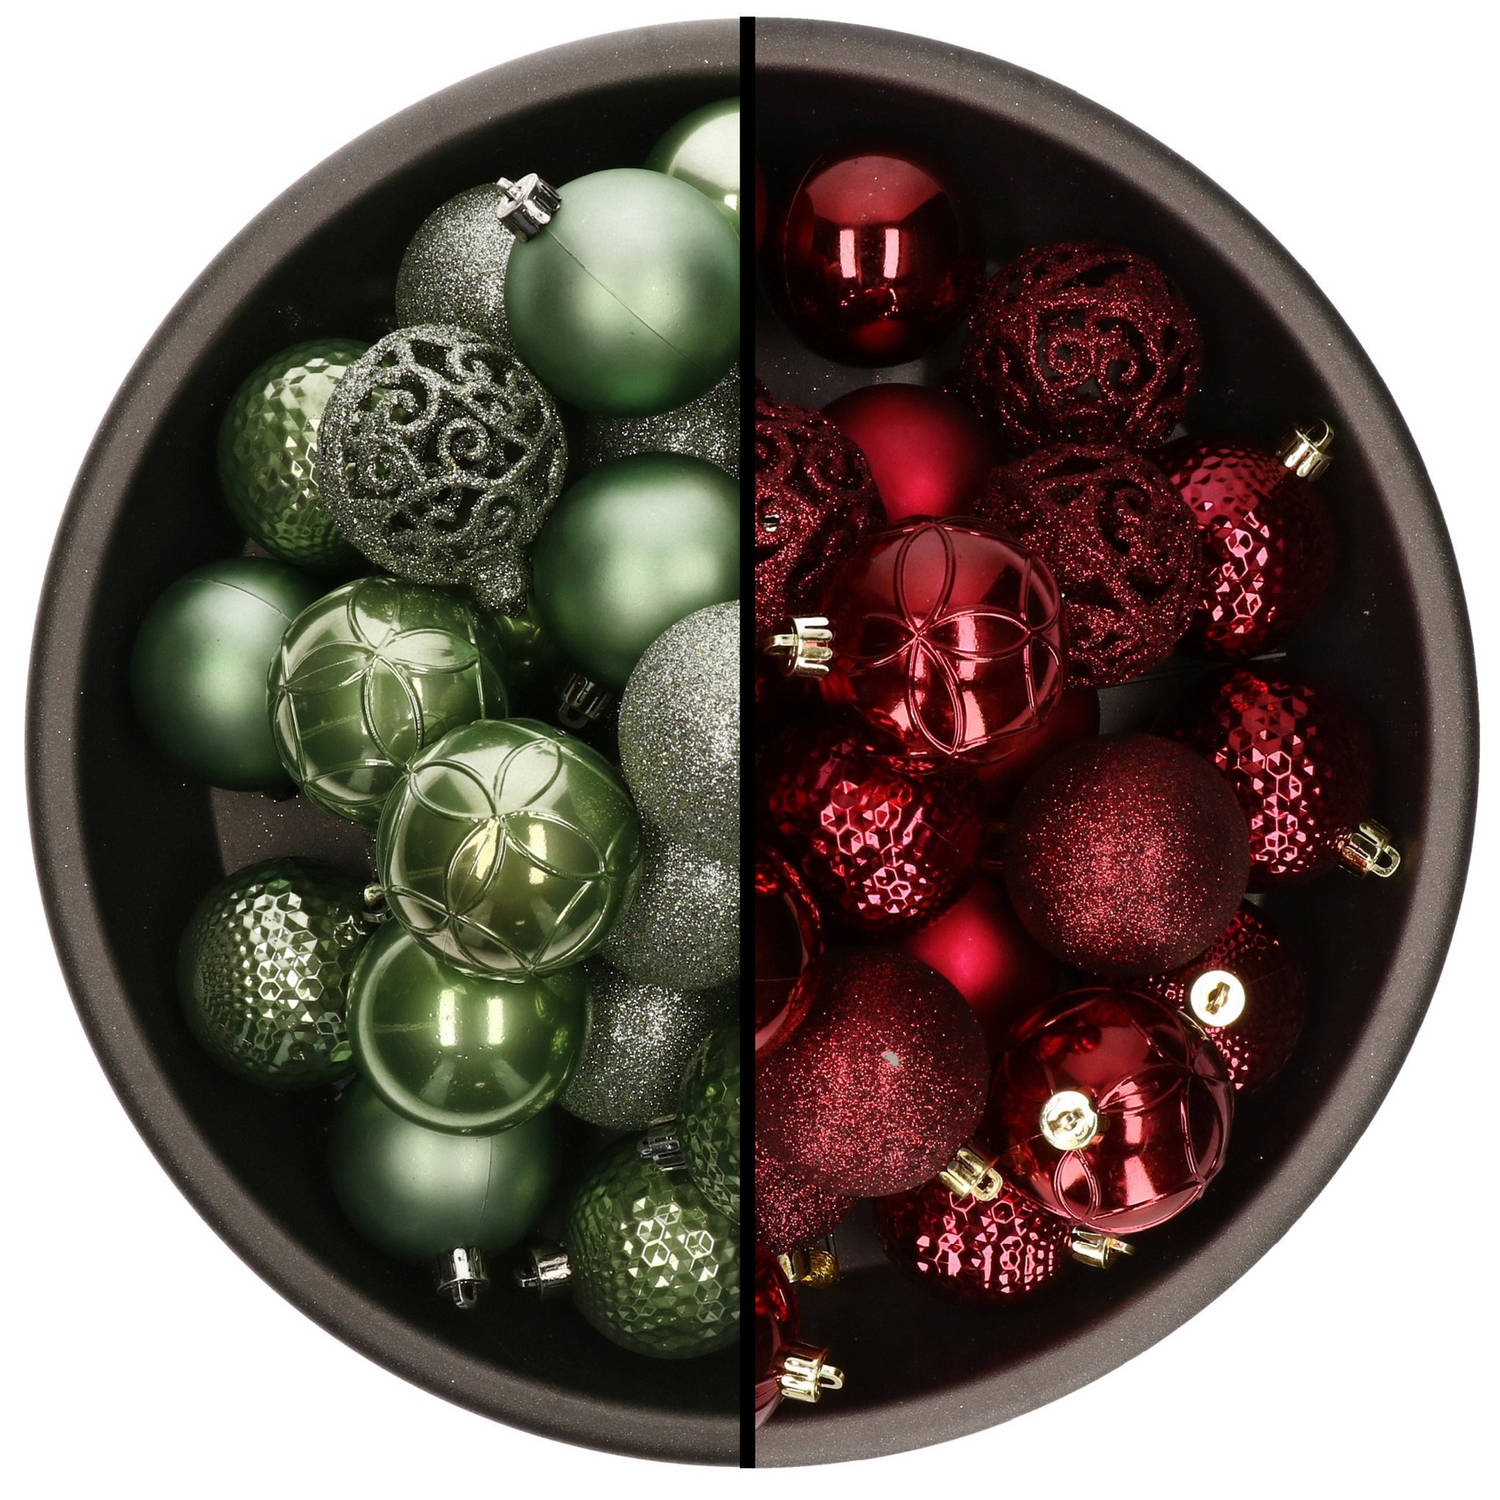 74x stuks kunststof kerstballen mix van salie groen en donkerrood 6 cm - Kerstbal